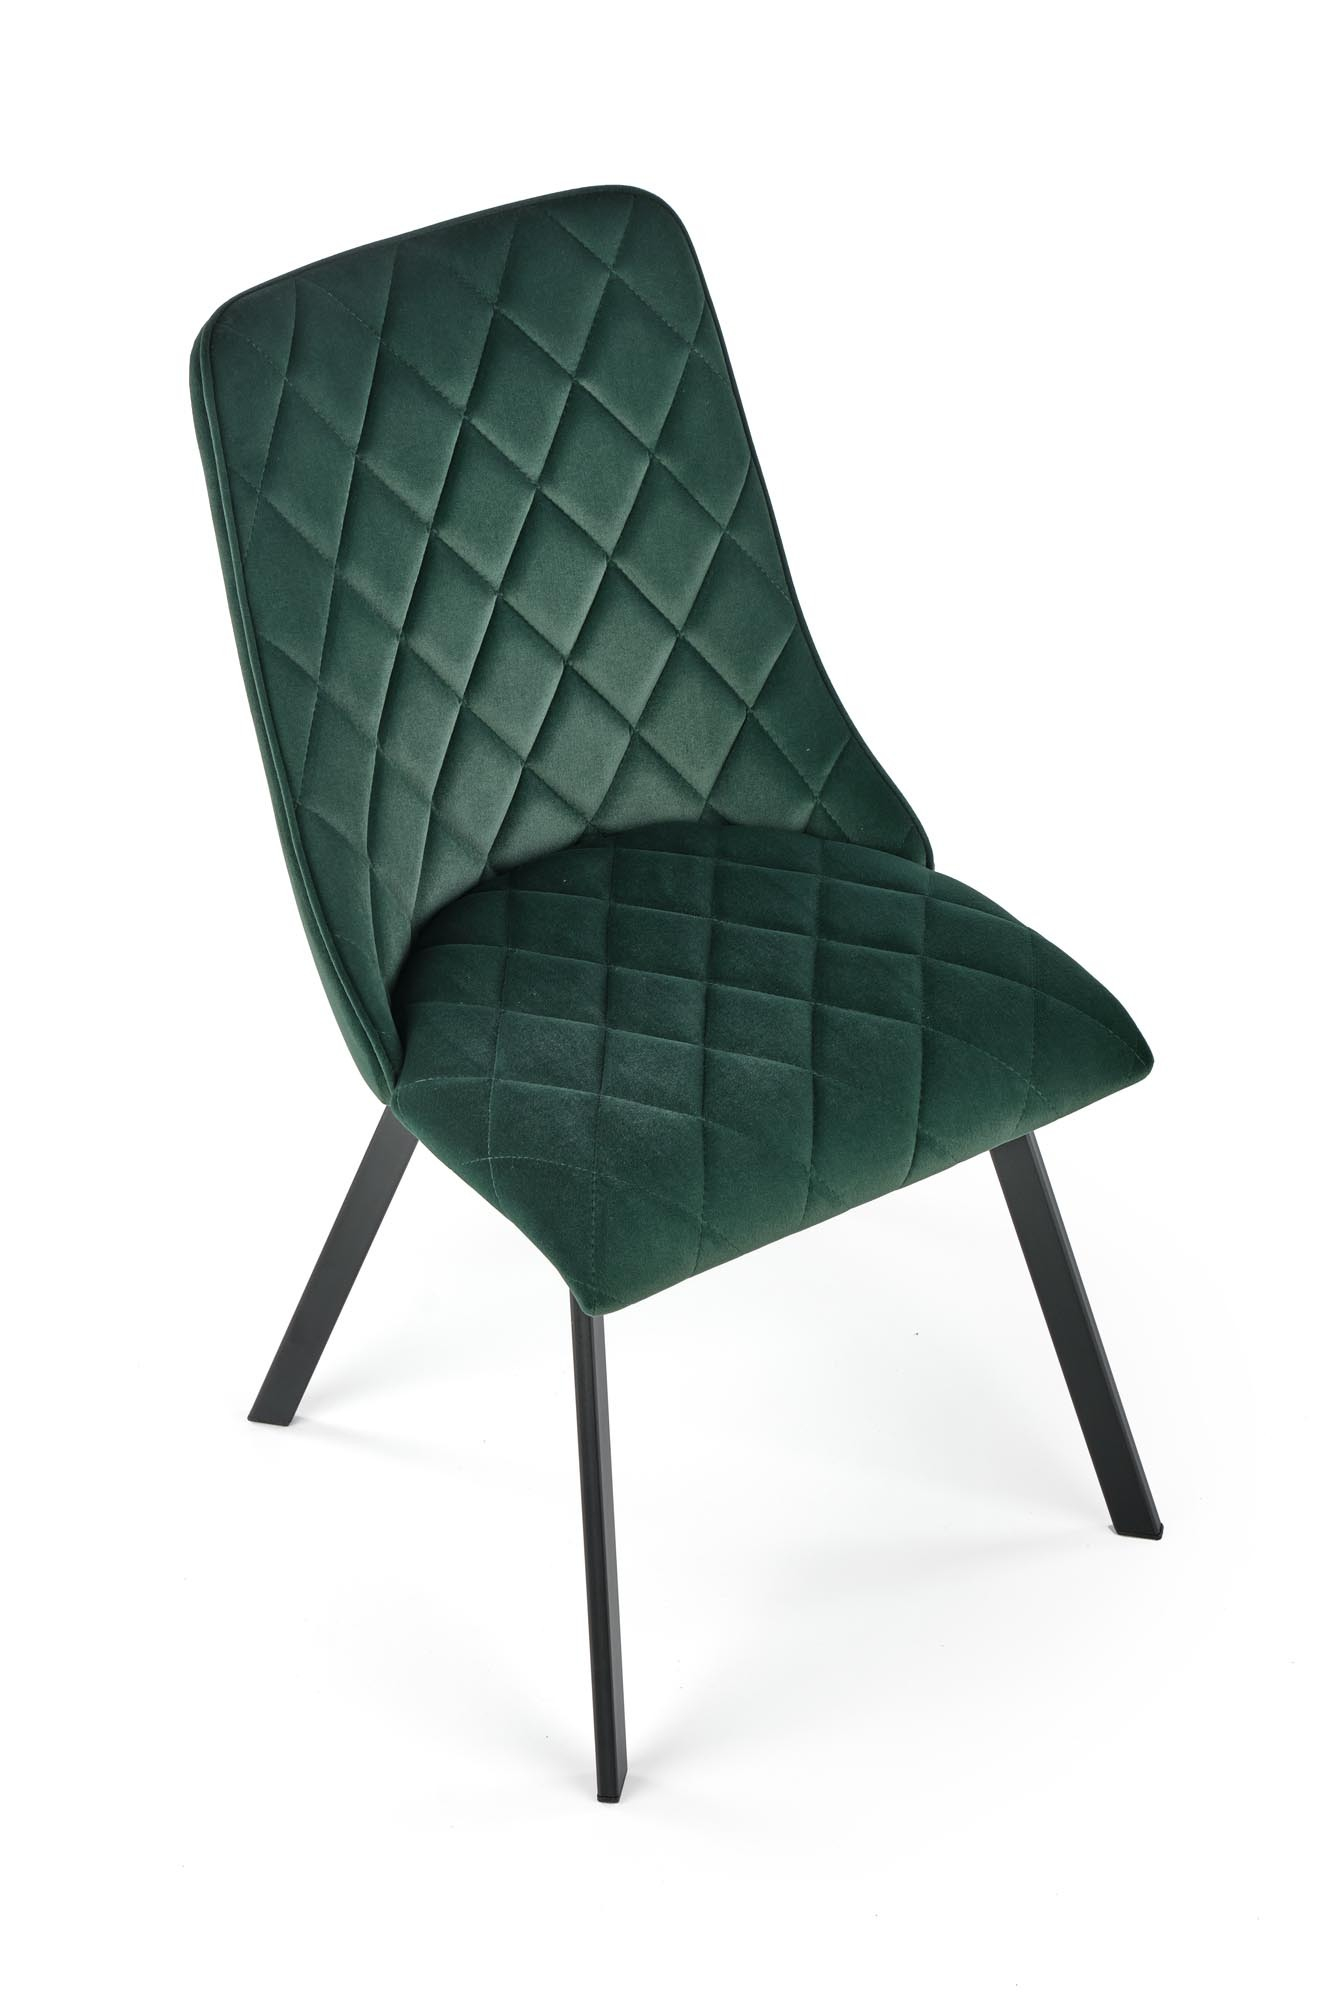 K450 krzesło ciemny zielony